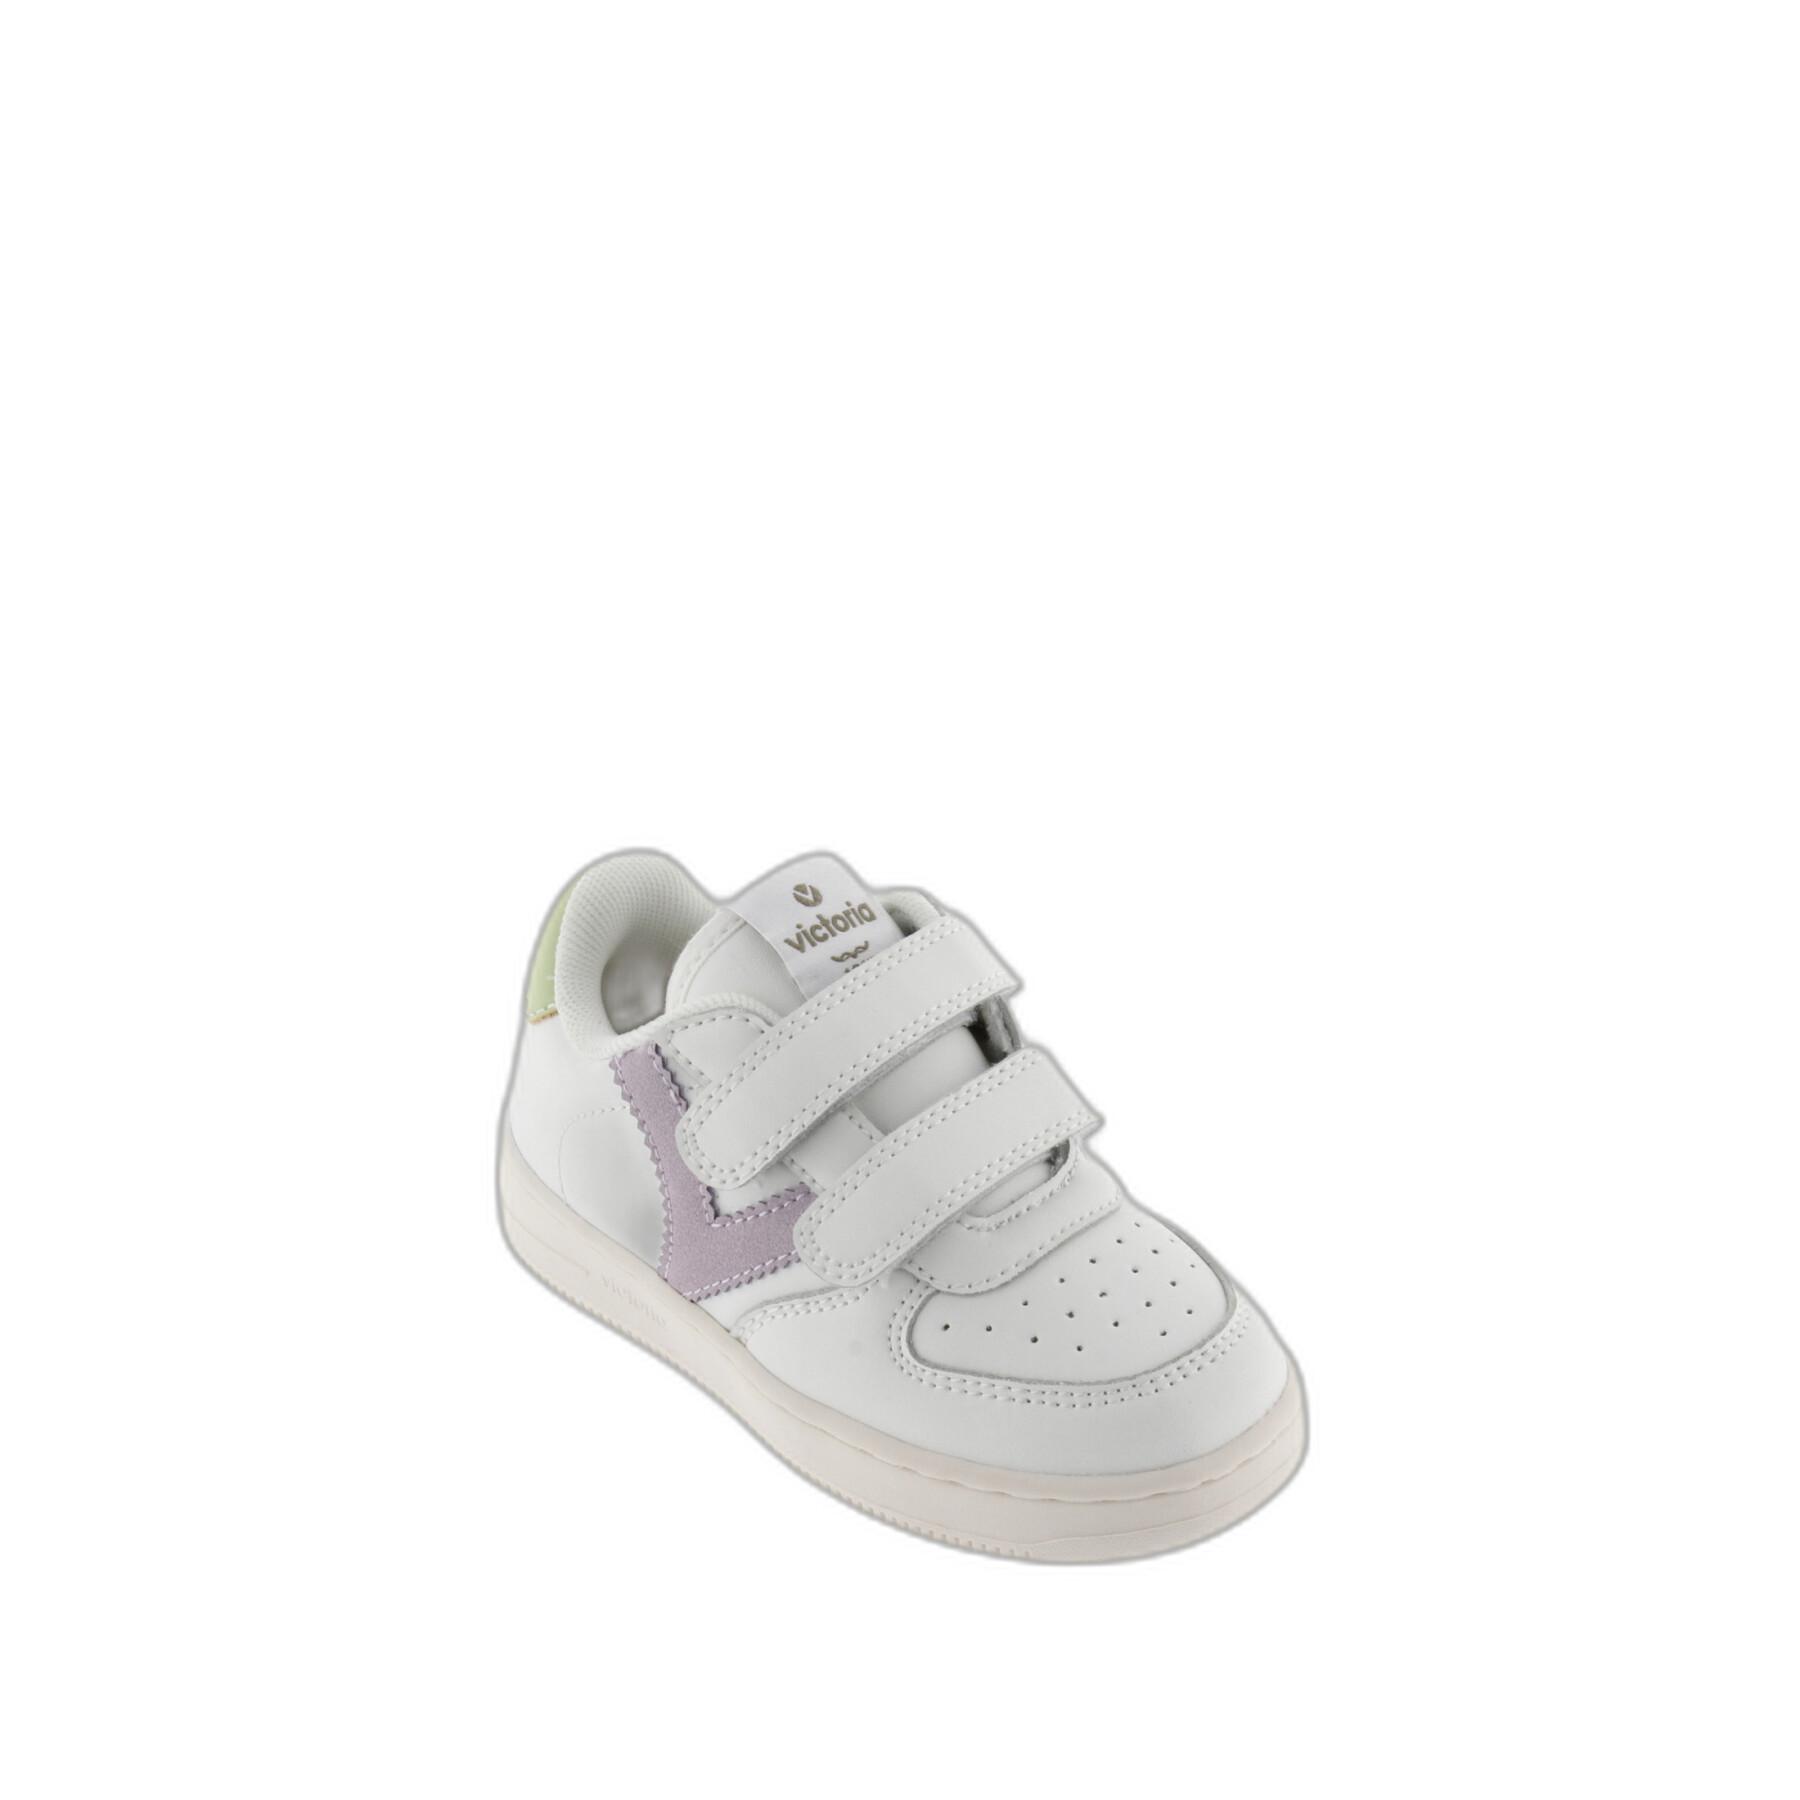 Contrasting baby girl sneakers Victoria Tiempo